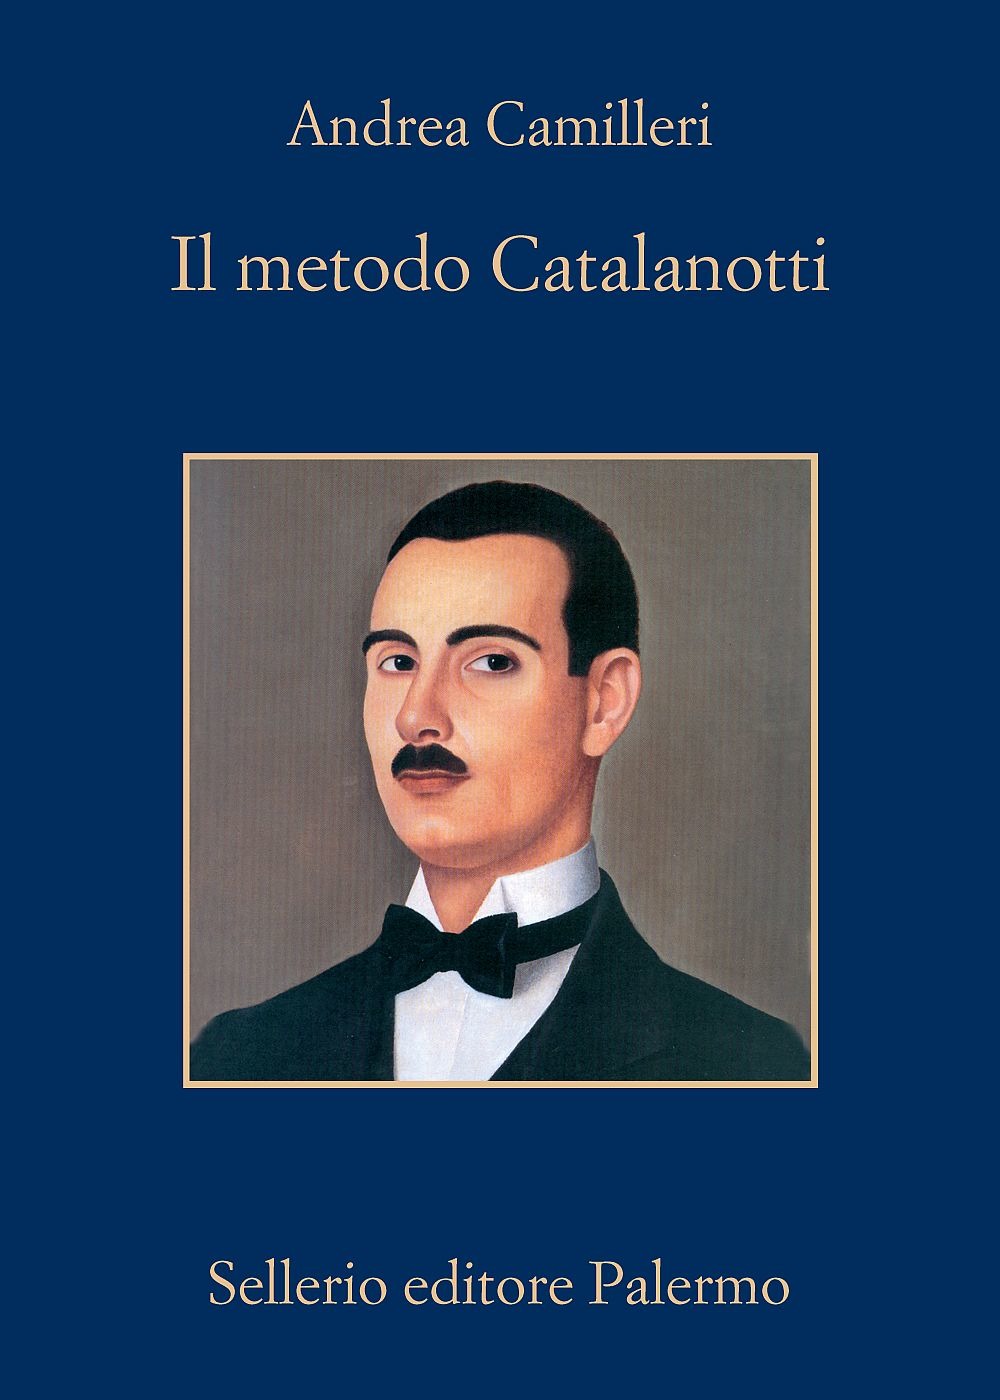 Andrea Camilleri Il metodo Catalanotti